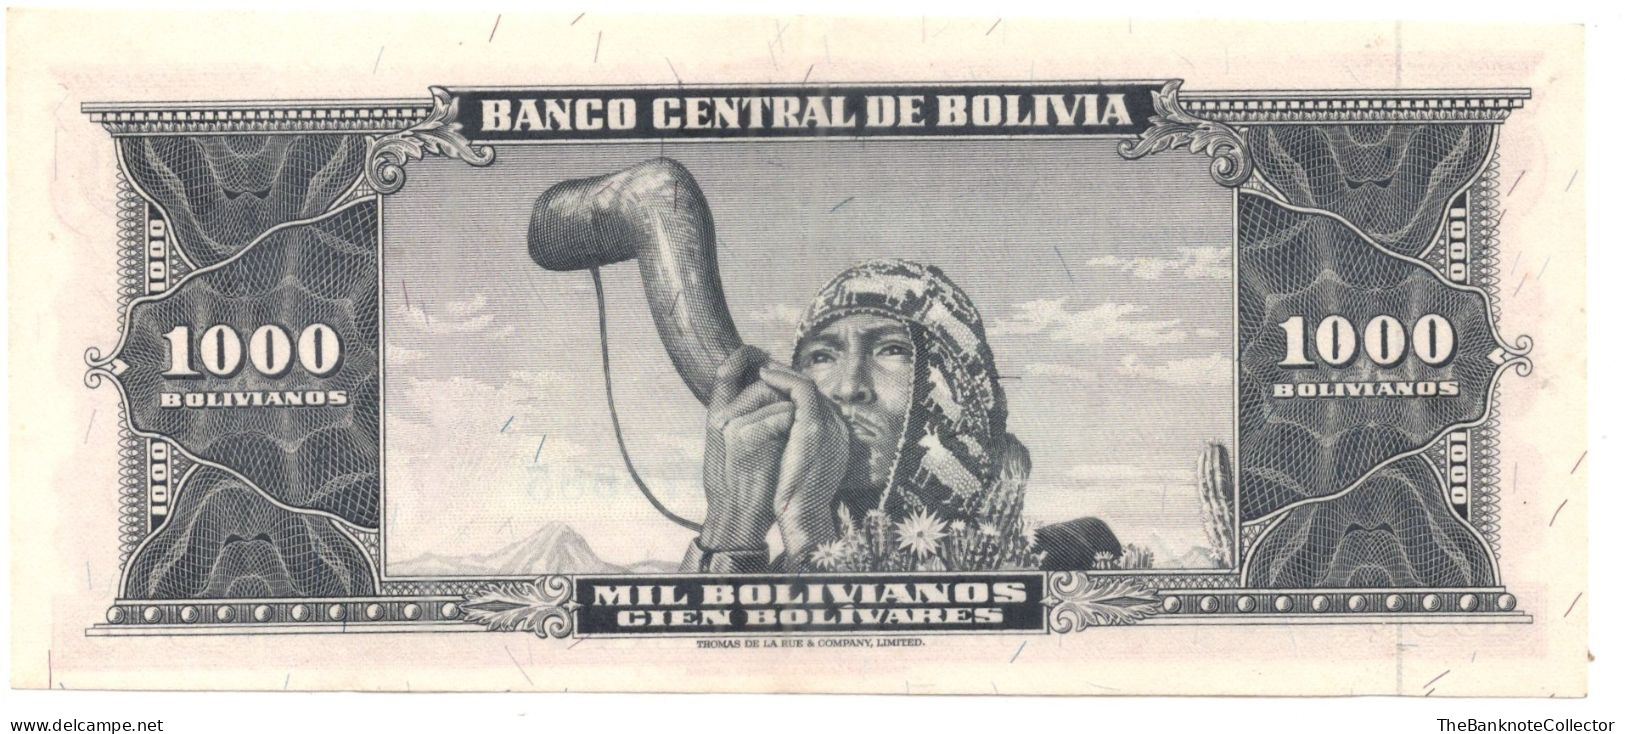 Bolivia 1000 Bolivanos 1945 P-149 UNC - Bolivia